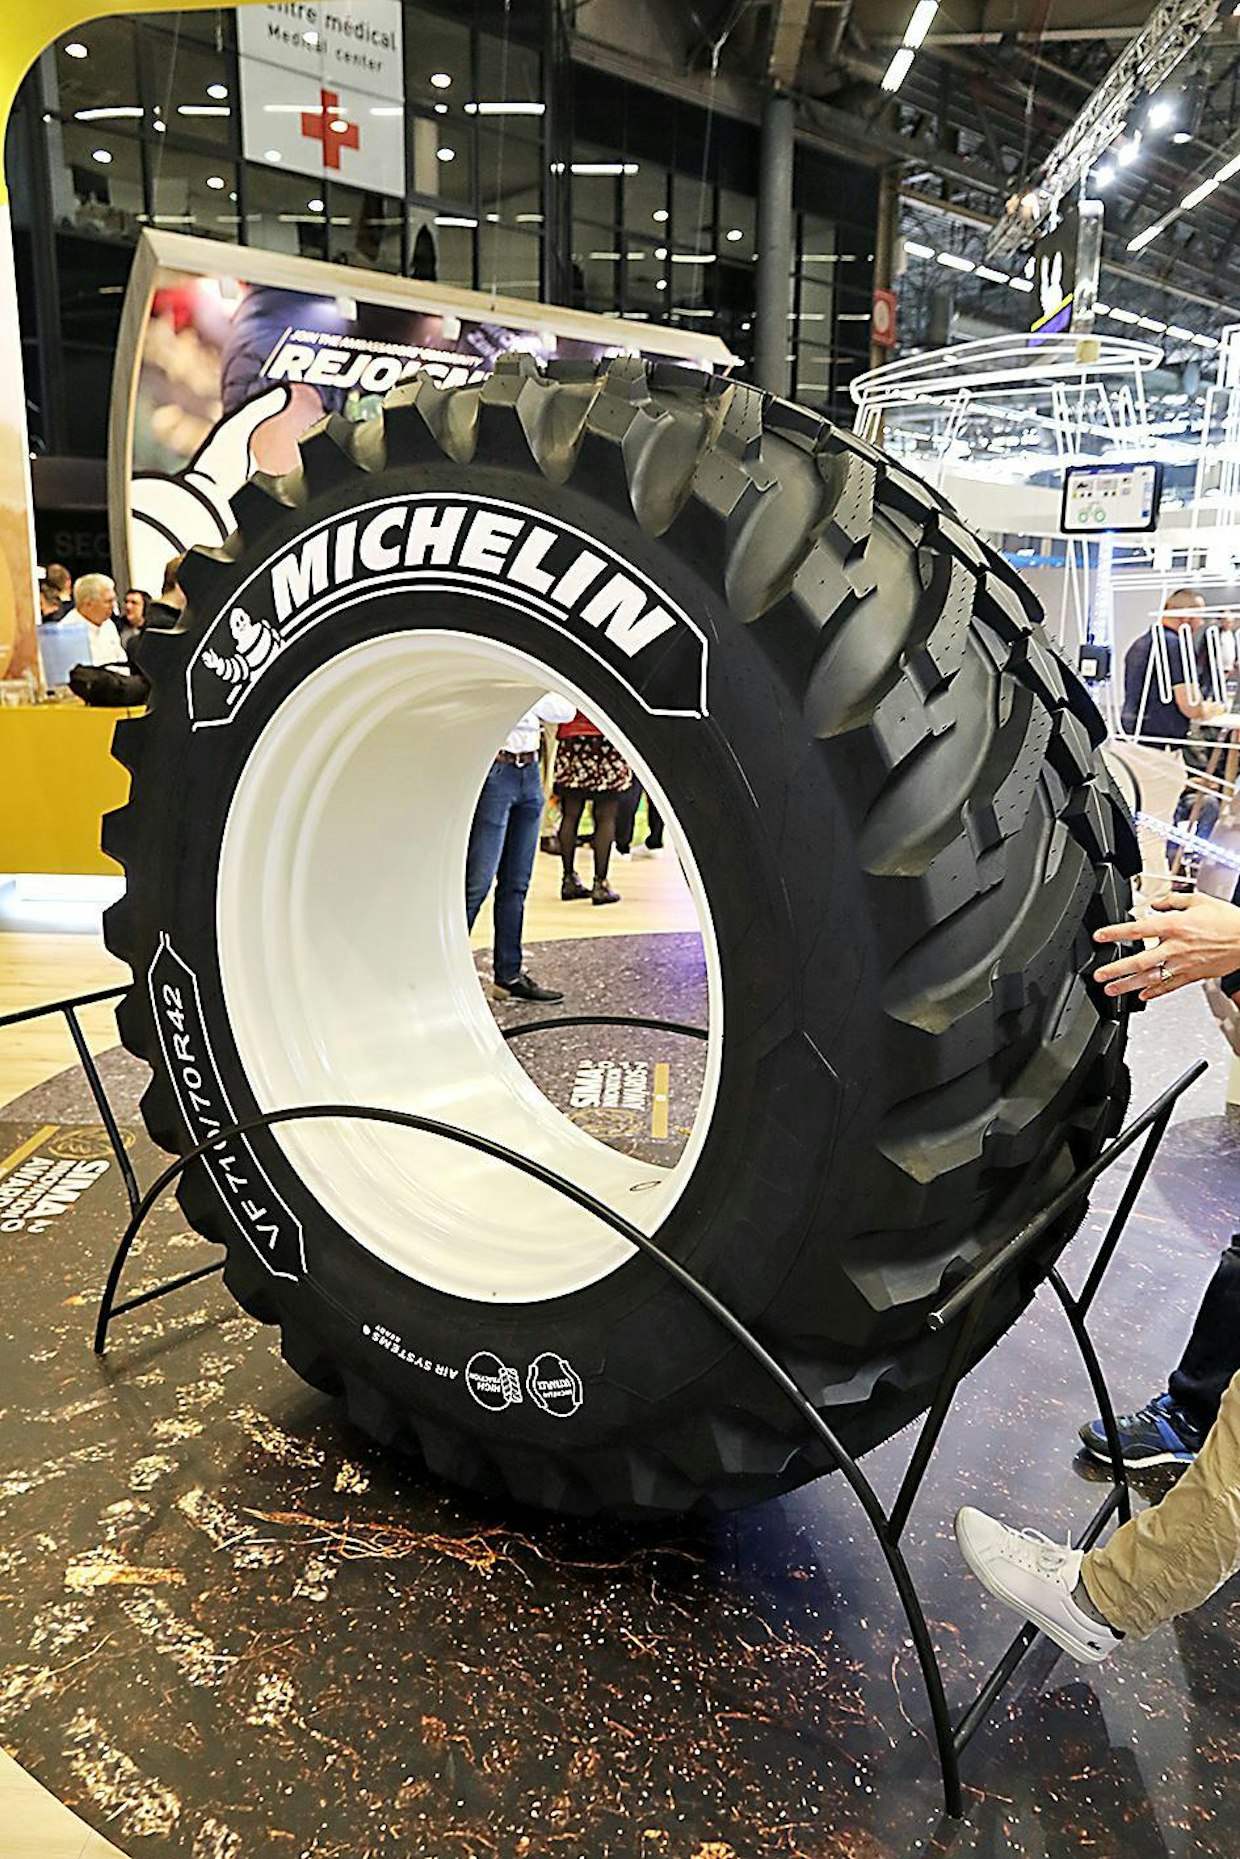 Michelin merkitsee ajon aikana tehtävään paineensäätöön soveltuvat renkaat ”Air System Ready” -merkinnällä. Kuvassa oleva Michelin Evobib on suunniteltu käytettäväksi rengaspainejärjestelmien kanssa. Michelin Evobib palkittiin SIMA-näyttelyn kultamitalilla.